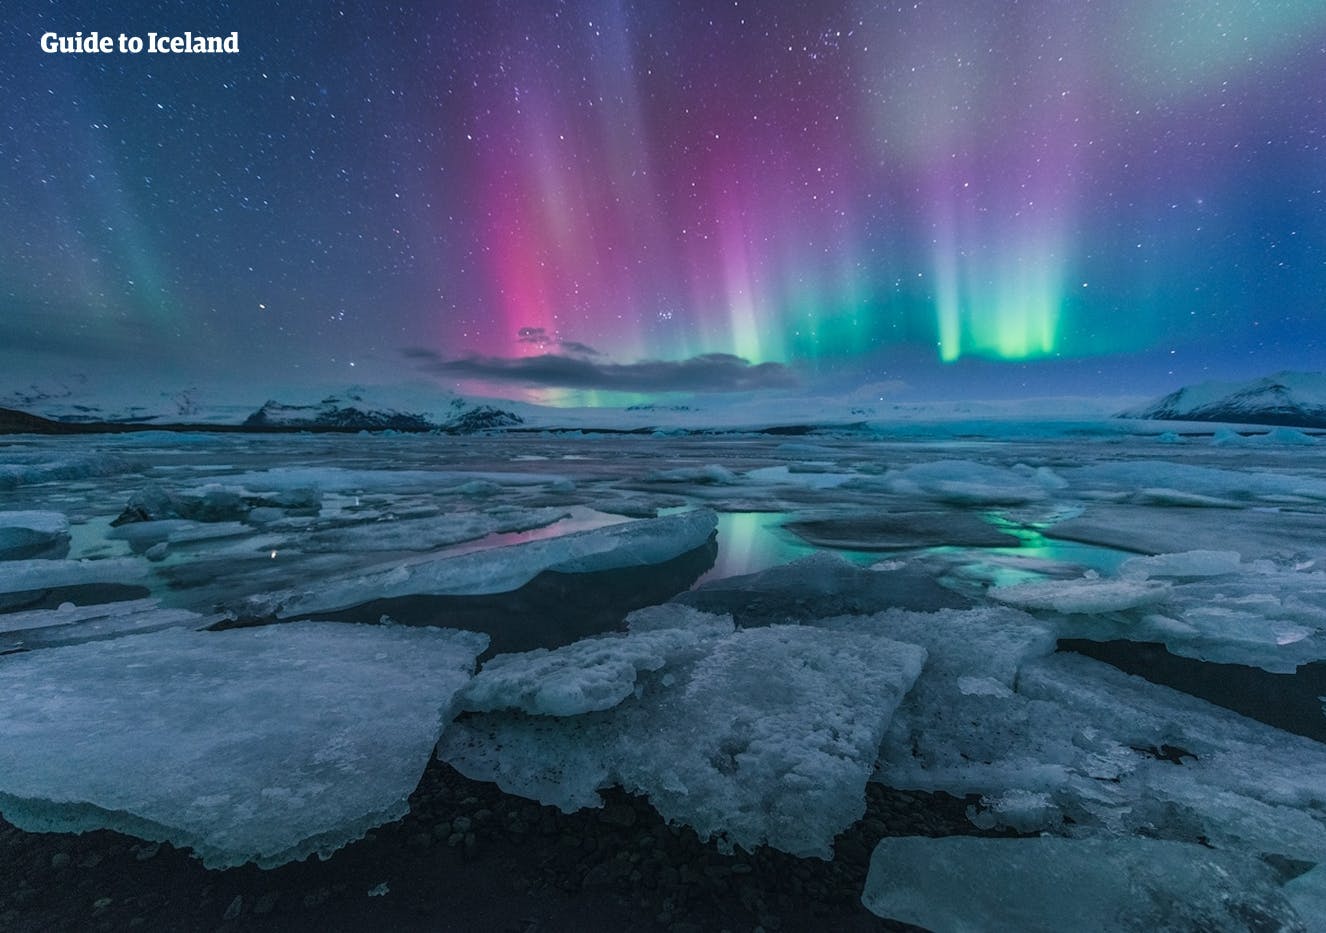 Niebiesko-różowa zorza polarna odbijała się w spokojnej, niebieskiej powierzchni laguny lodowcowej Jökulsárlón.